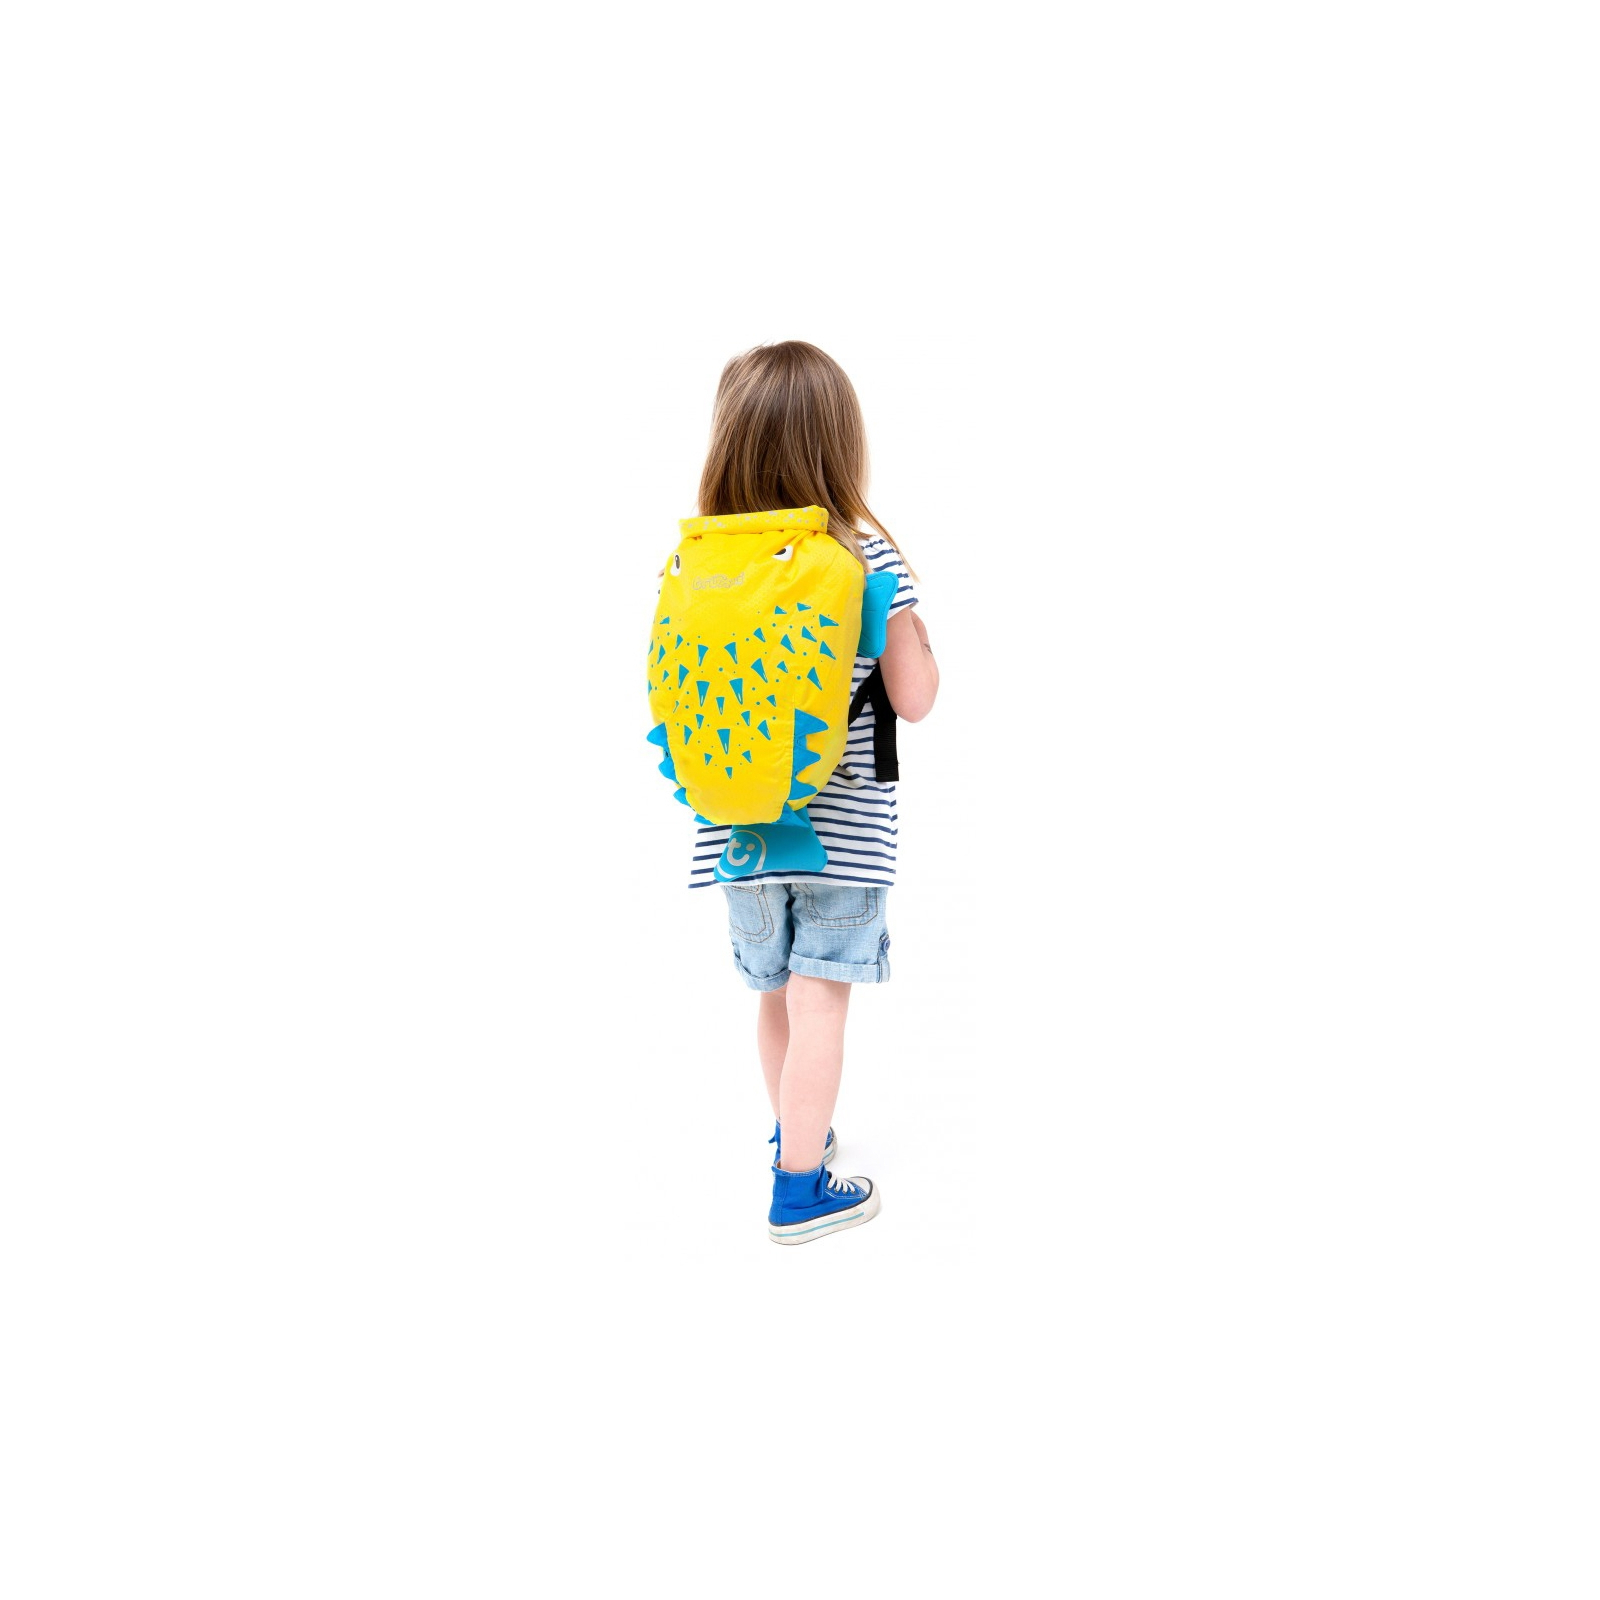 Рюкзак детский Trunki PaddlePak Рыбка Желтый (0111-GB01-NP) изображение 4